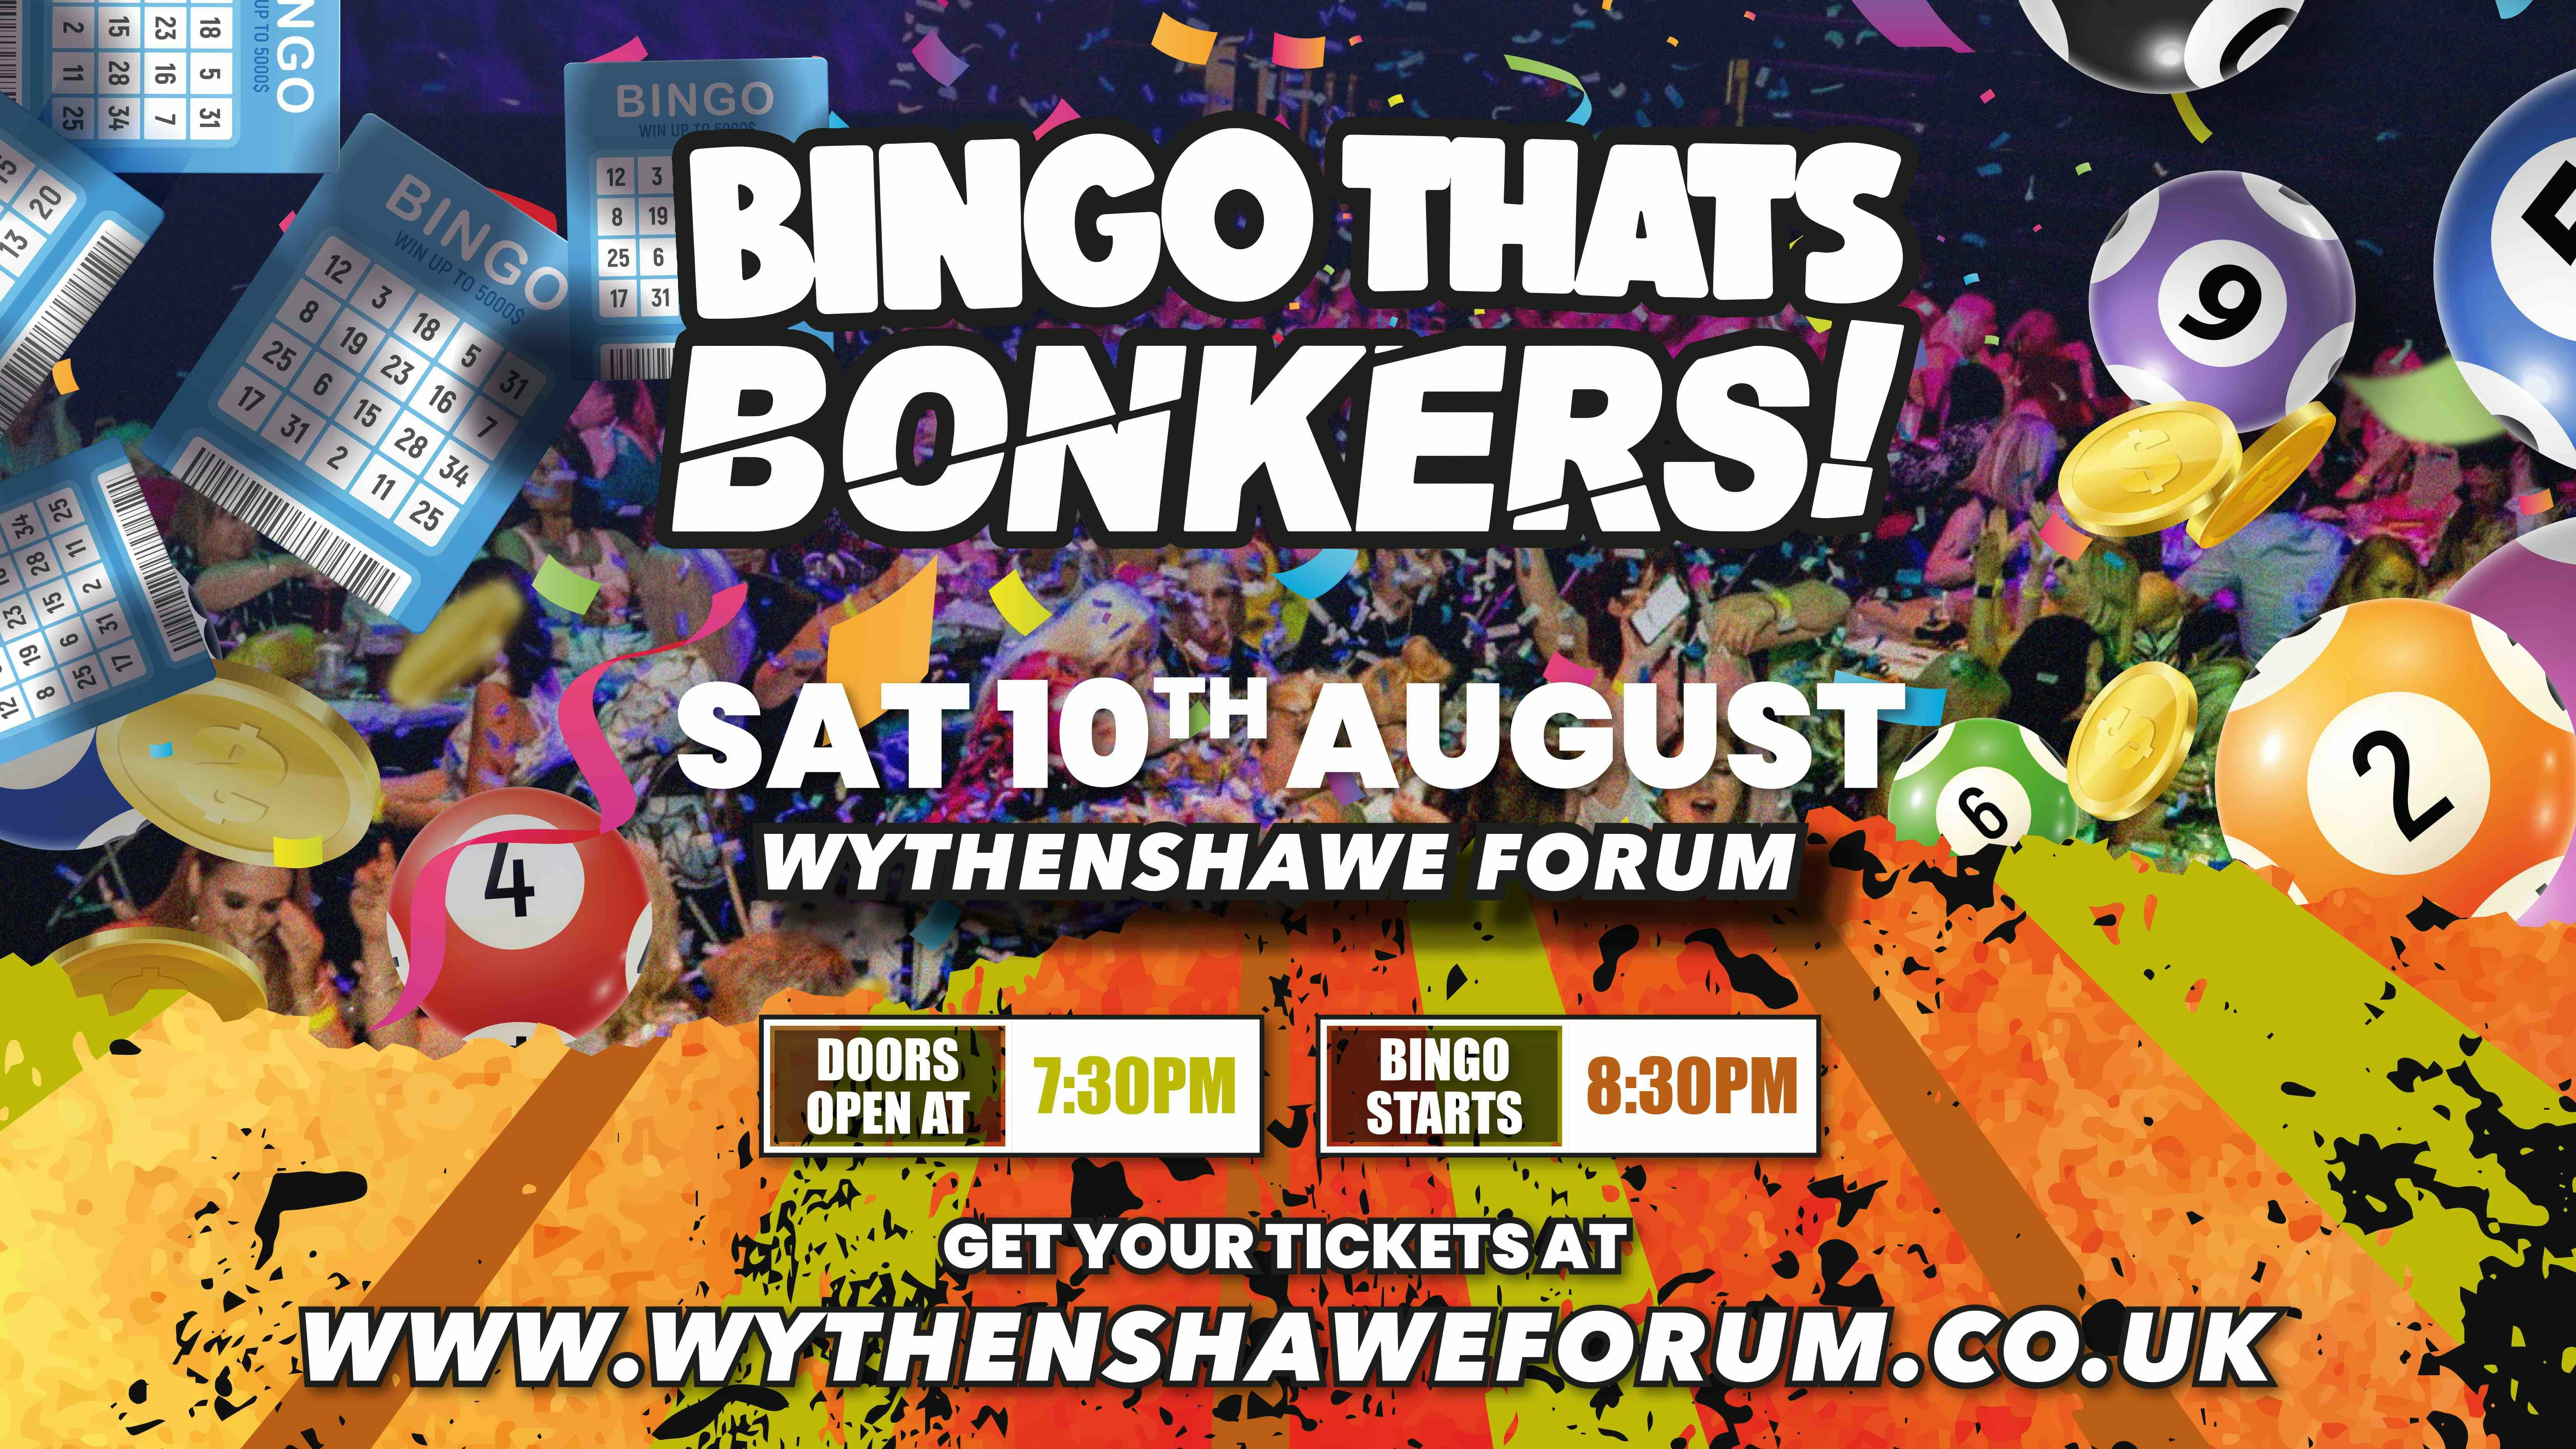 Bingo Thats Bonkers – Wythenshaw Forum